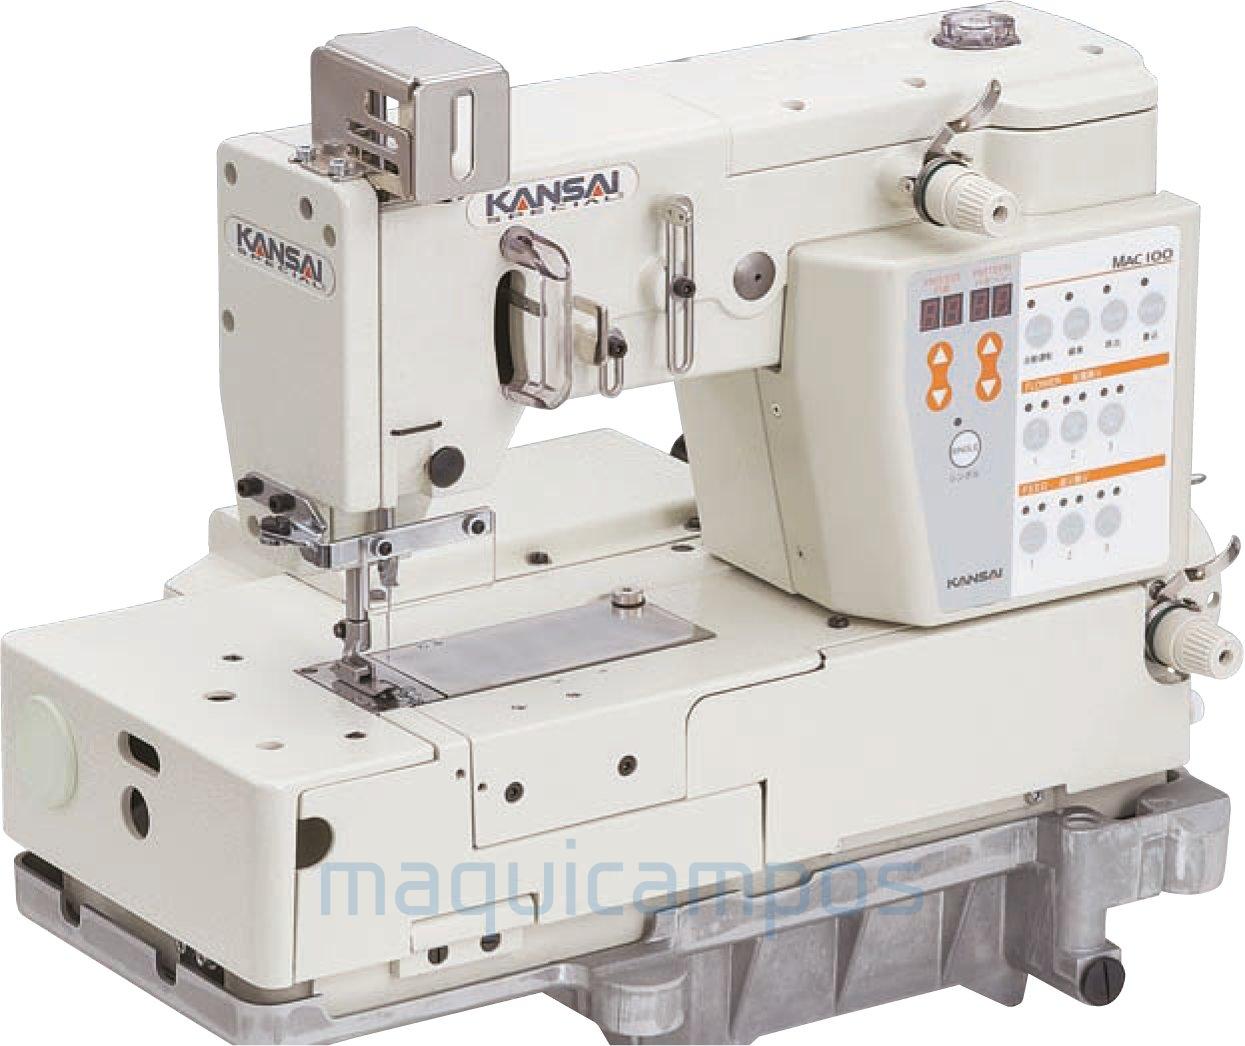 Kansai Special MAC100 Decorative Stitch Sewing Machine